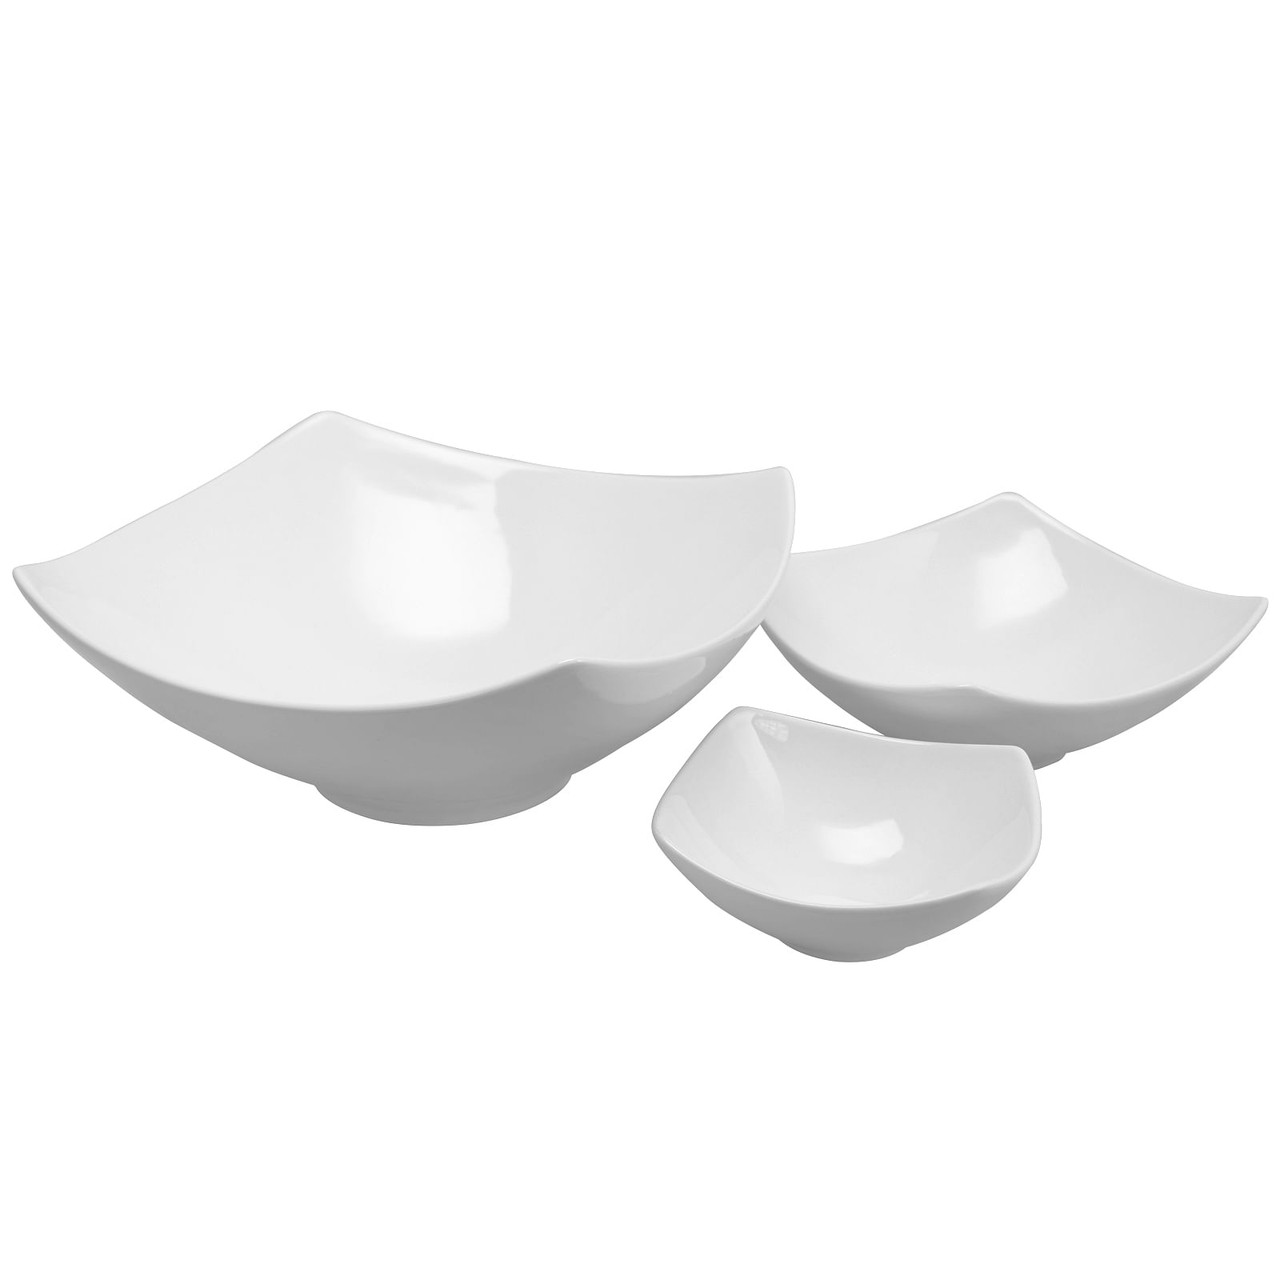 Gibson Elite Gracious Dining 3-Piece Stoneware Square Bowl Set in White